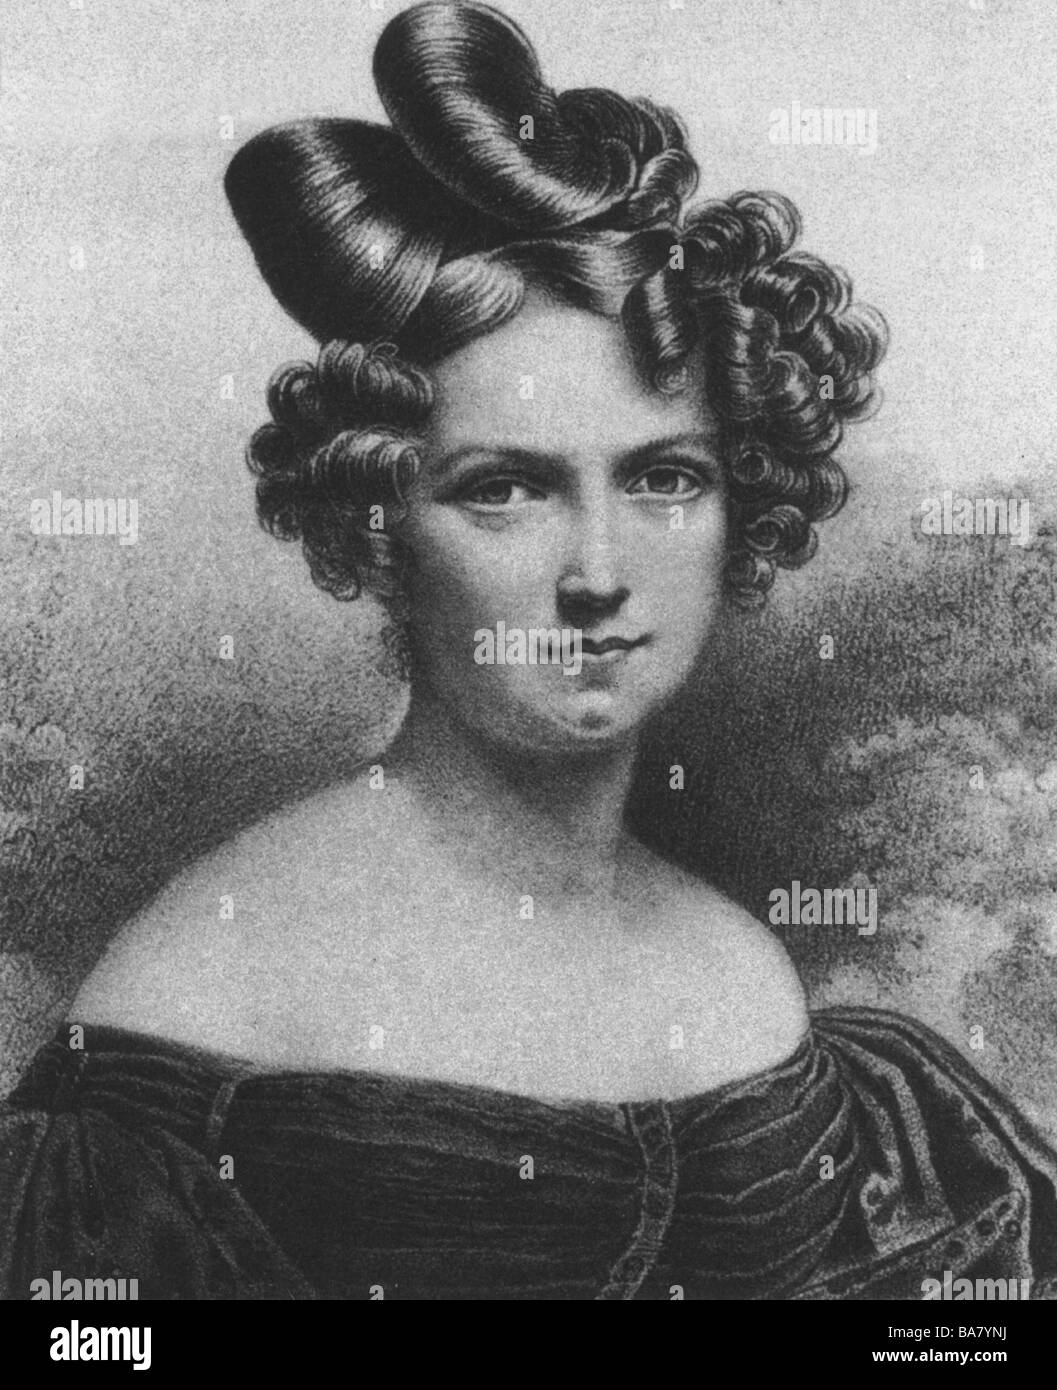 Schroeder-Devrient, Wilhelmine, 6.12.1804 - 26.1.1860, German singer, portrait, lithograph by Engelmann after drawing by Vigneron, 19th century, Stock Photo